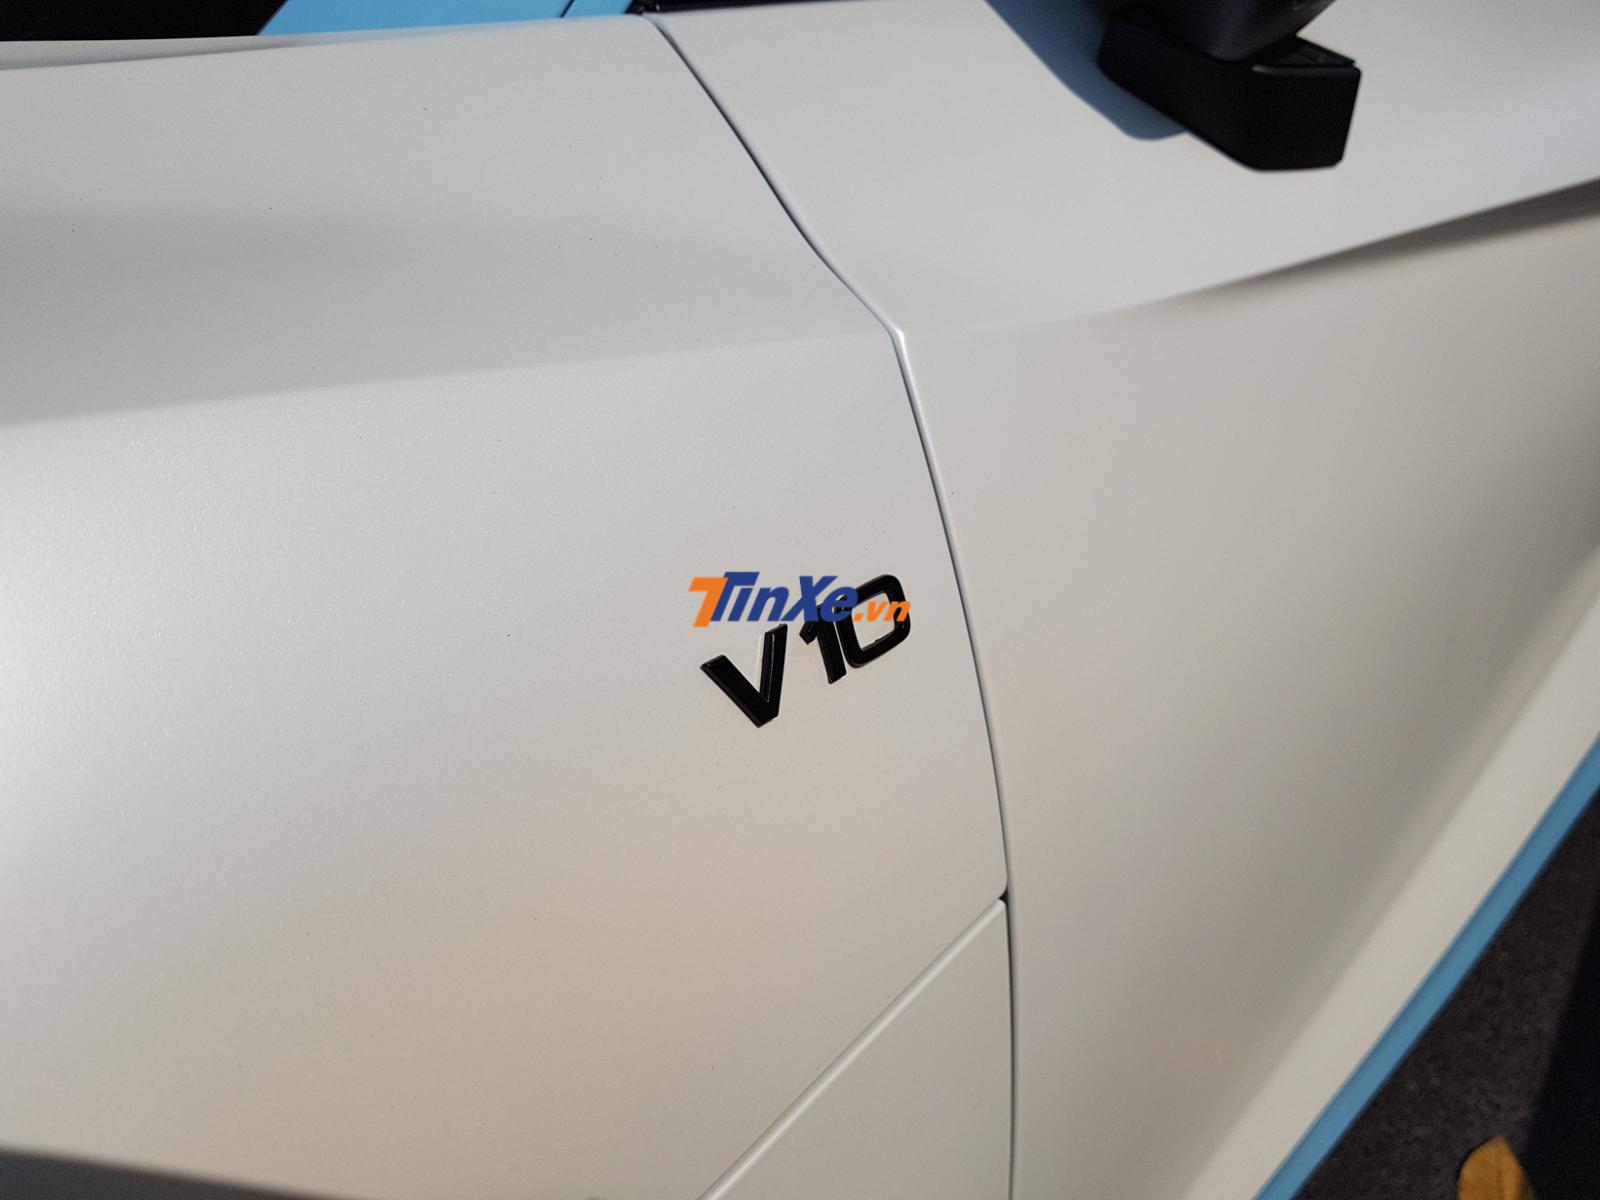 Để tạo điểm nhấn cho bộ áo mới 2 tông màu trắng mờ và xanh nhạt, Cường Đô la đã cho các chi tiết như logo V10 bên hông xe